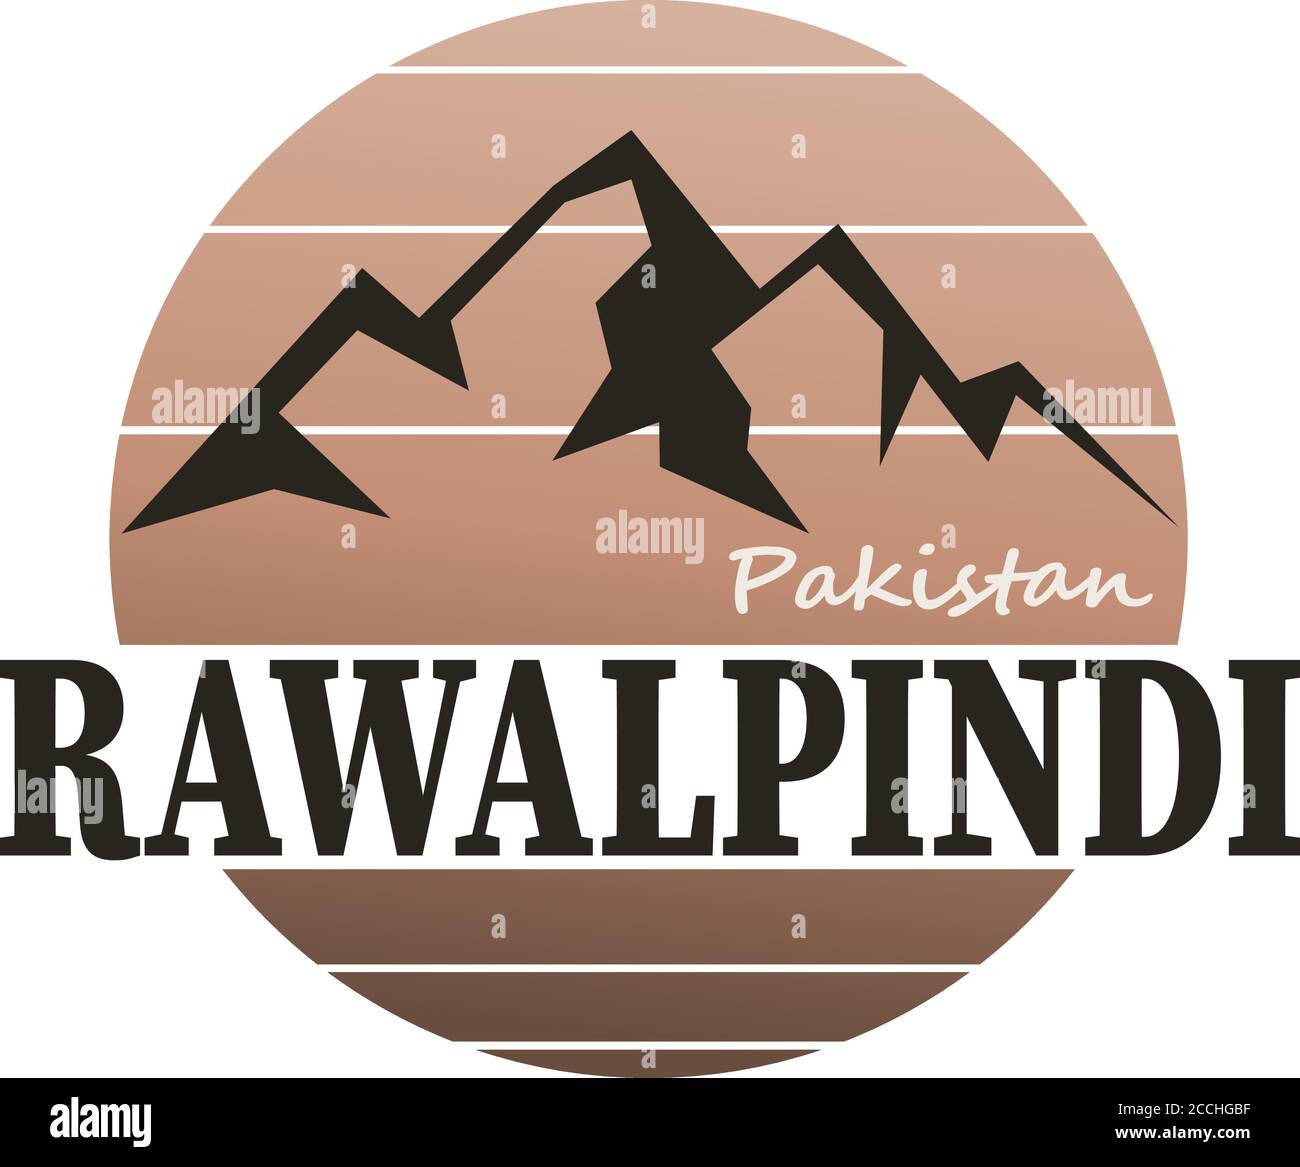 Rawalpindi Pakistan timbro geografico. Etichetta della città o del paese, cartello. Illustrazione Vettoriale